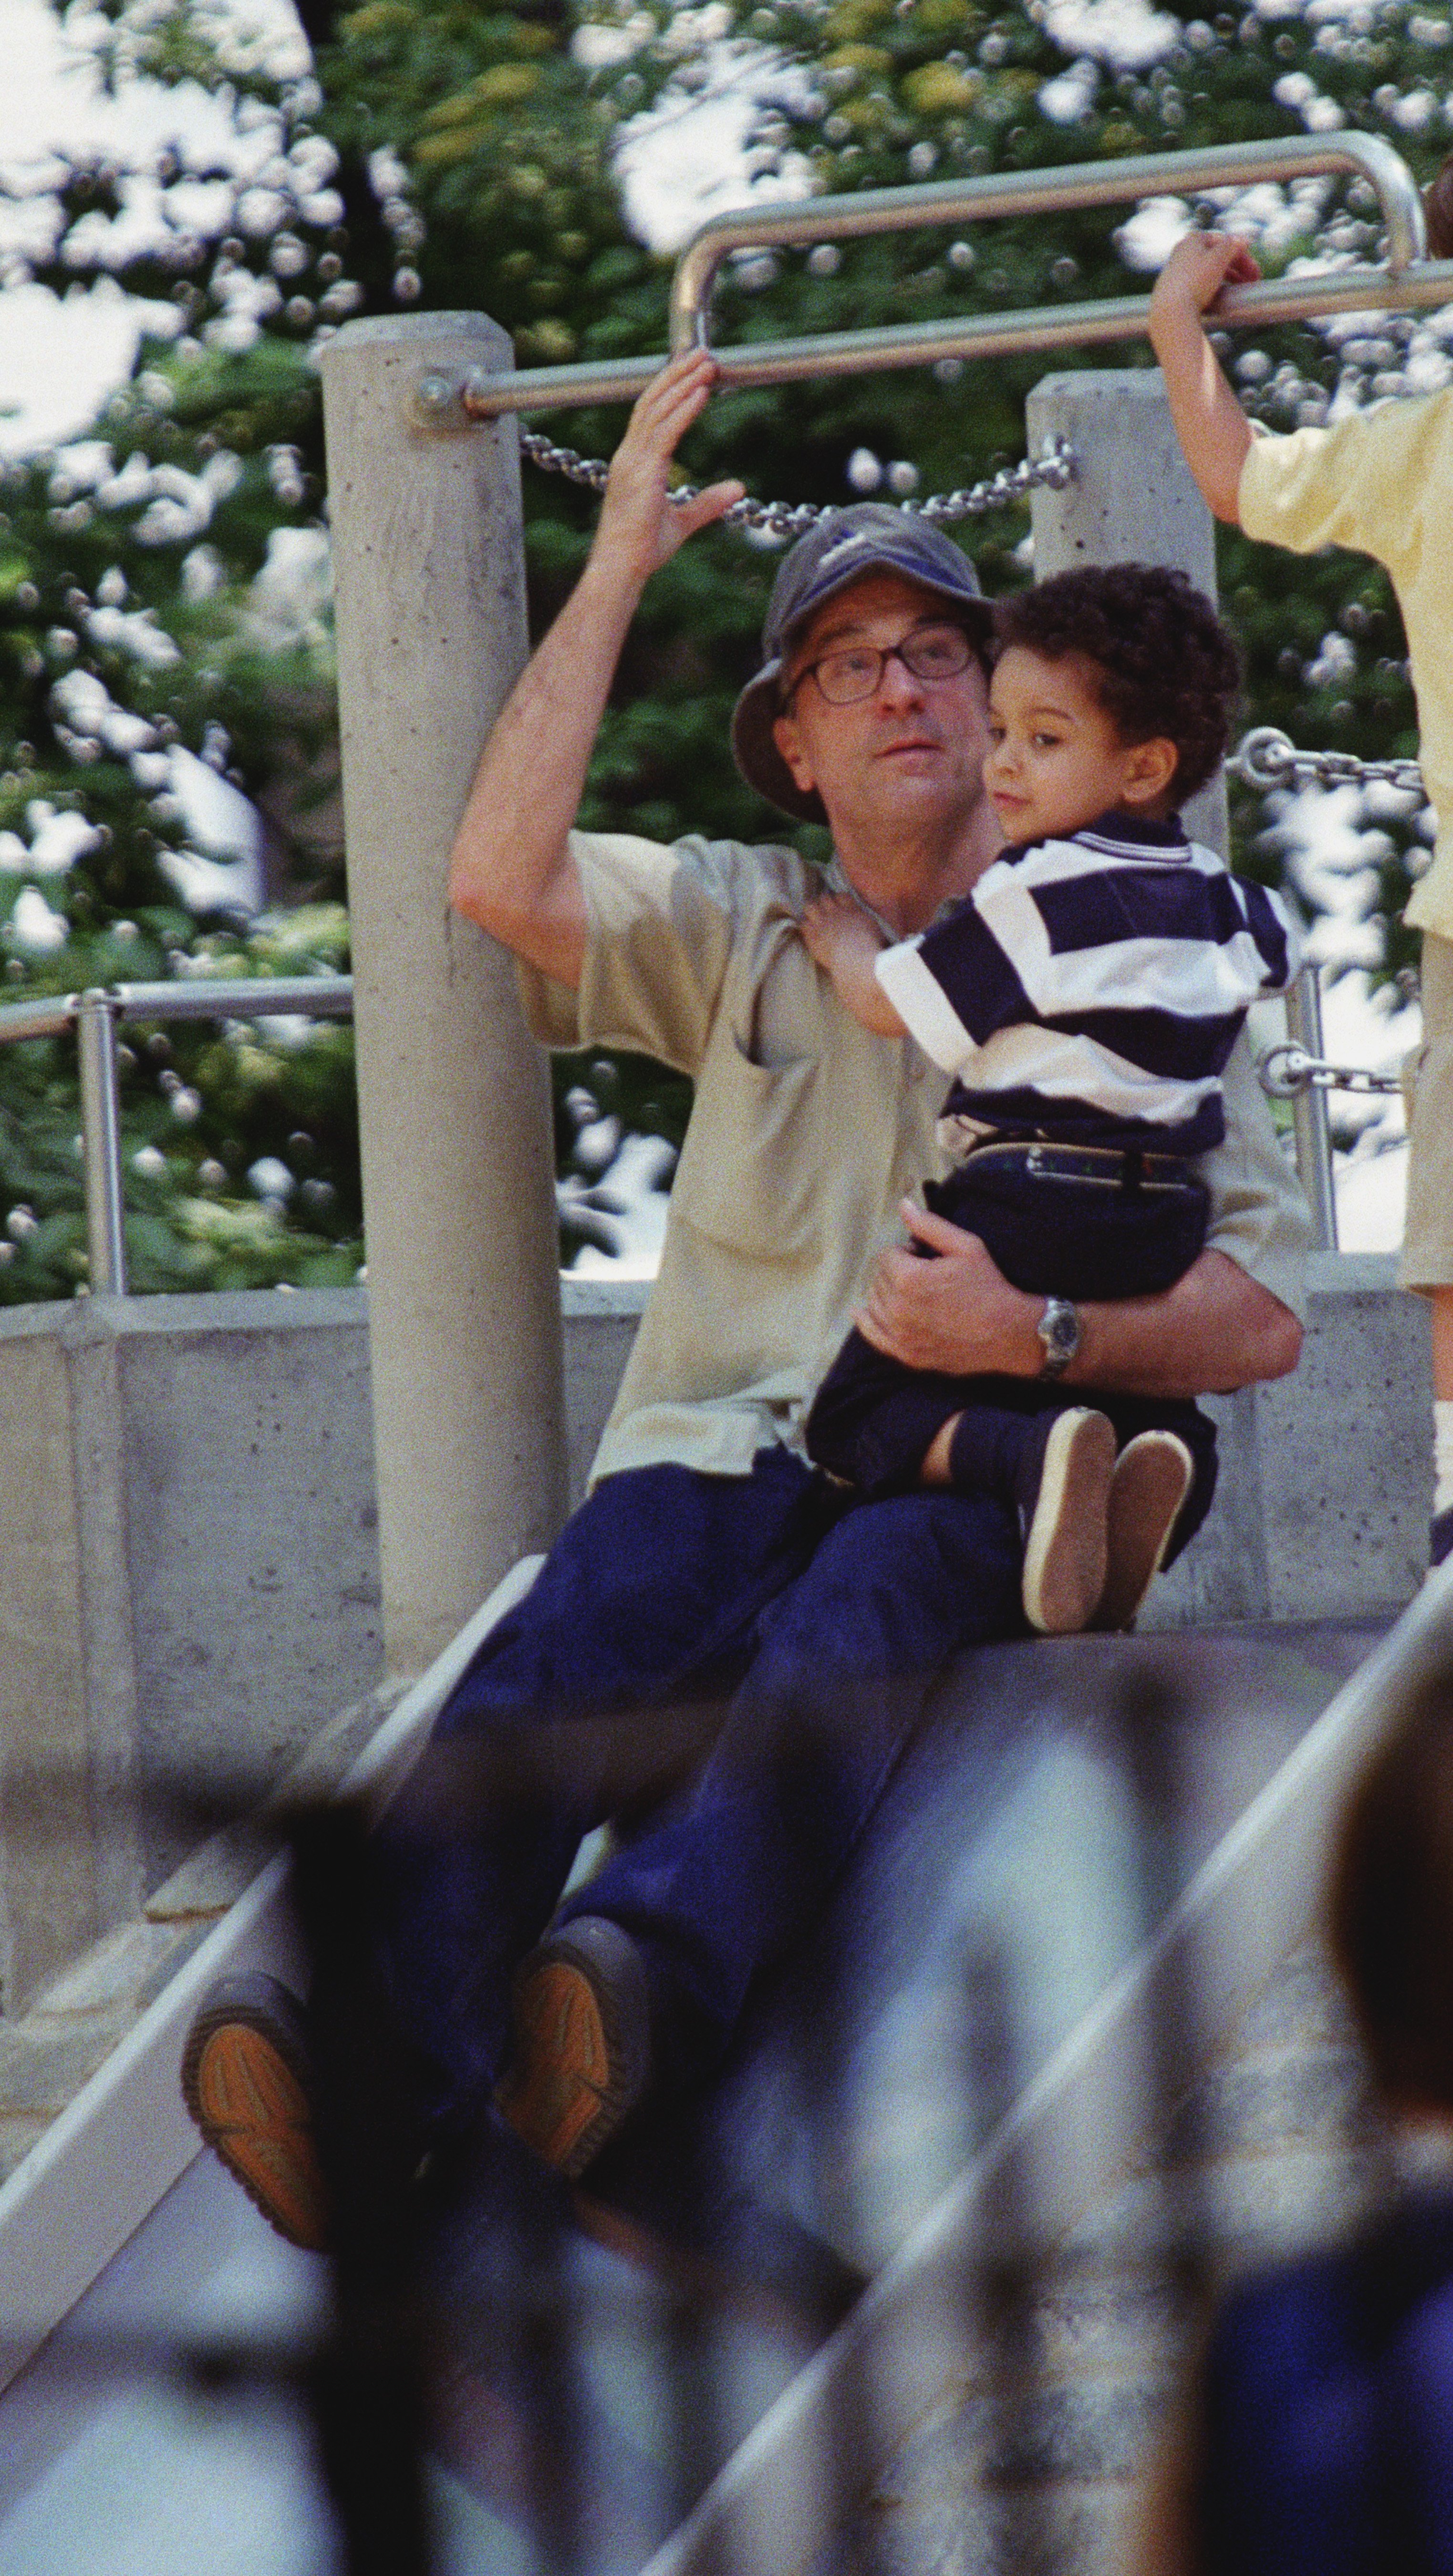 El productor Robert De Niro y su hijo, Elliot, fotografiados en Sliding Pond en Central Park, Nueva York. | Foto: Getty Images